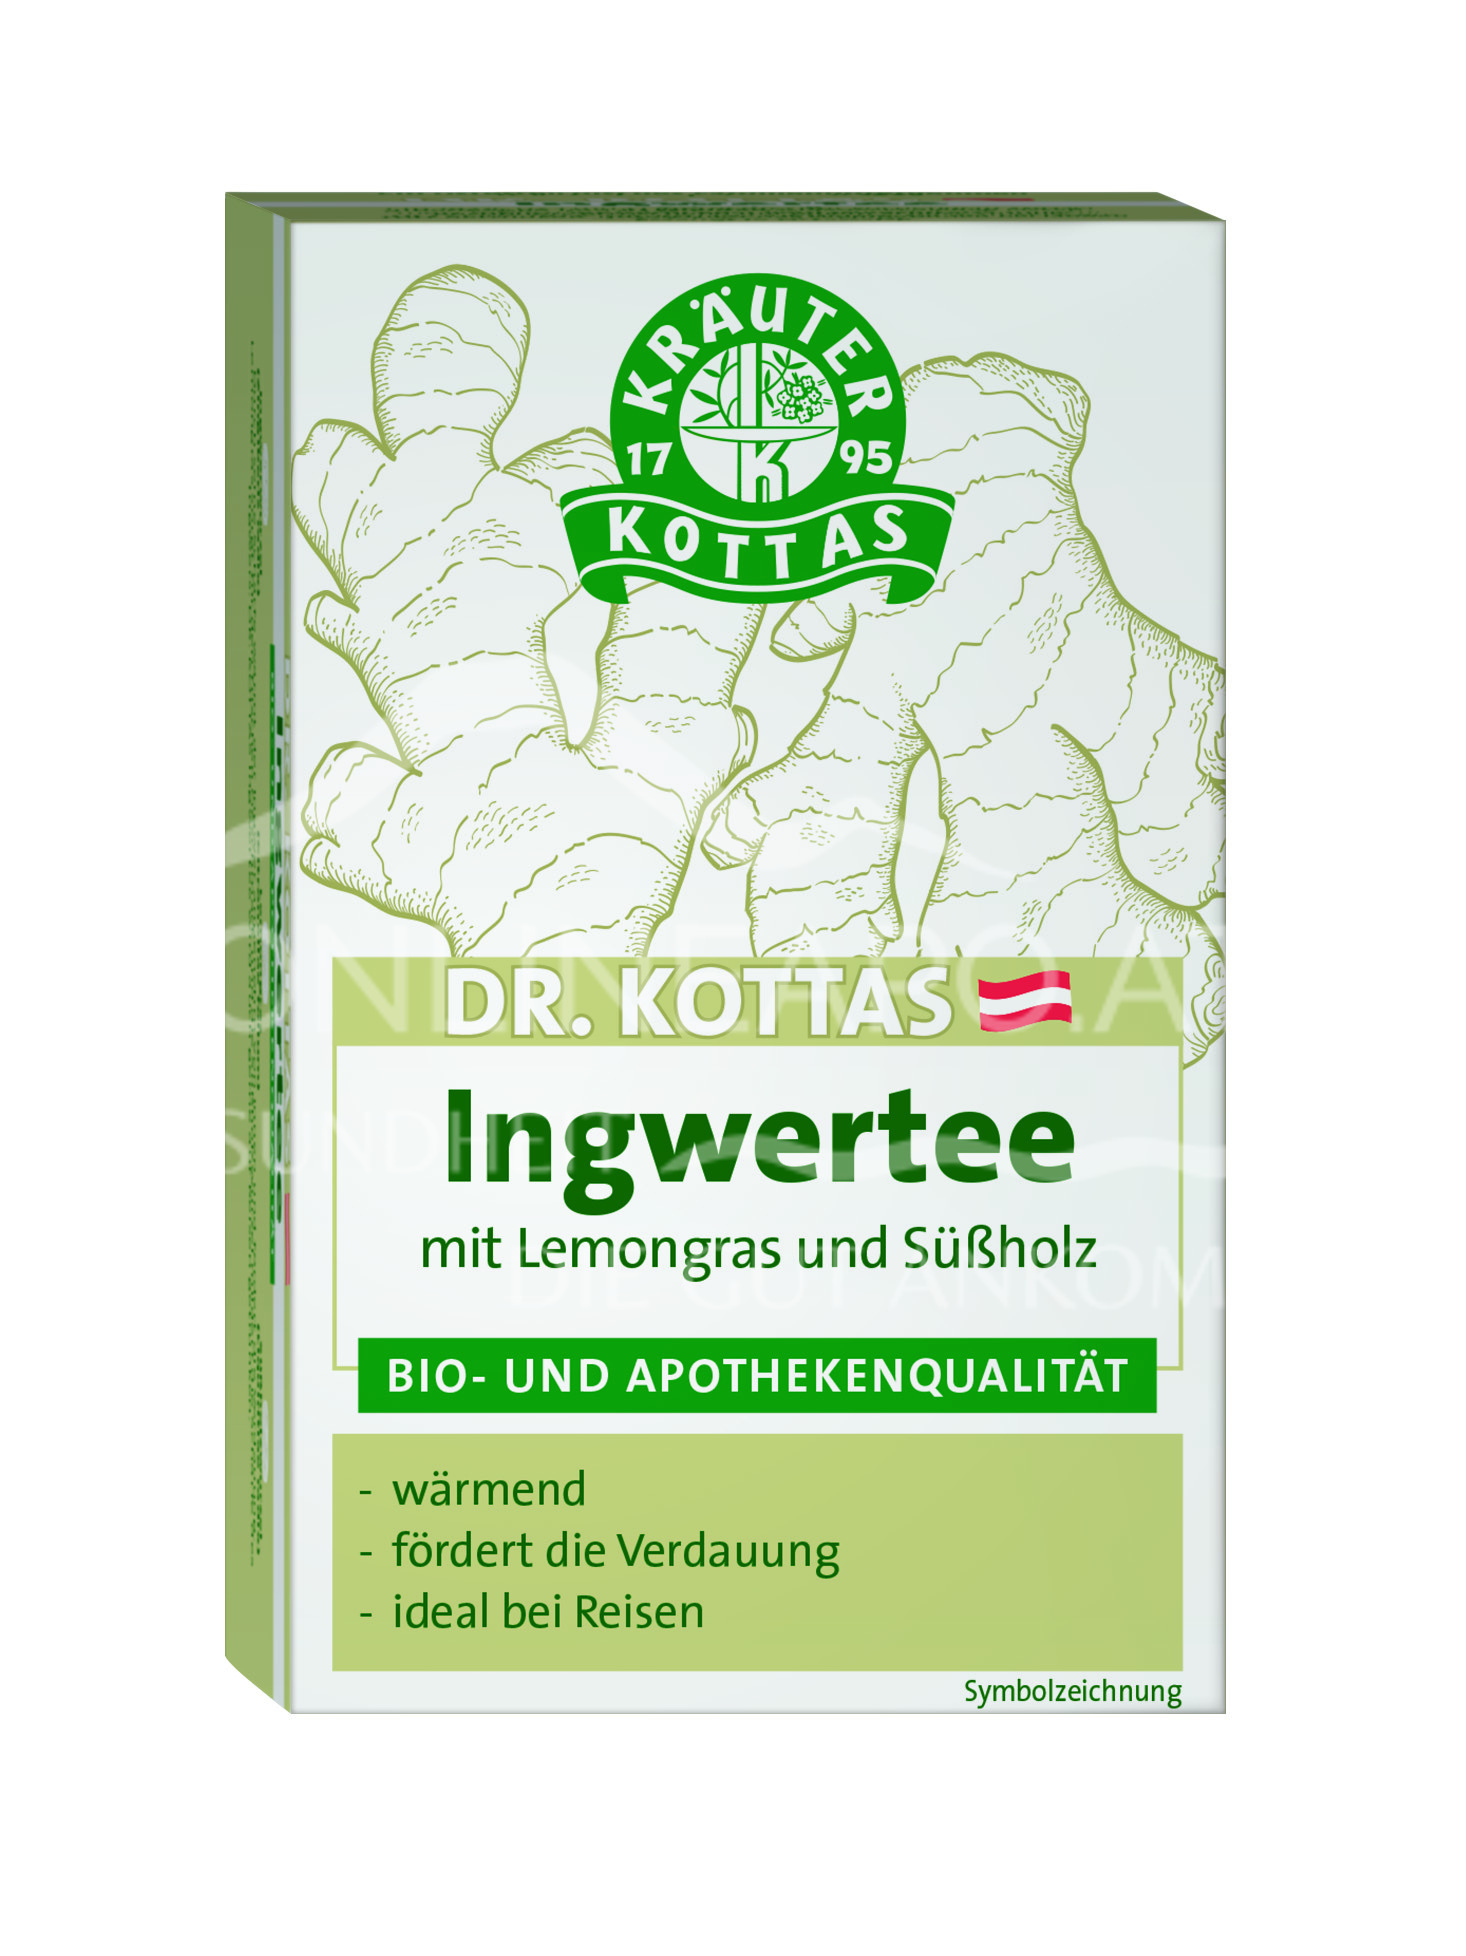 Dr. Kottas Ingwertee mit Lemongras